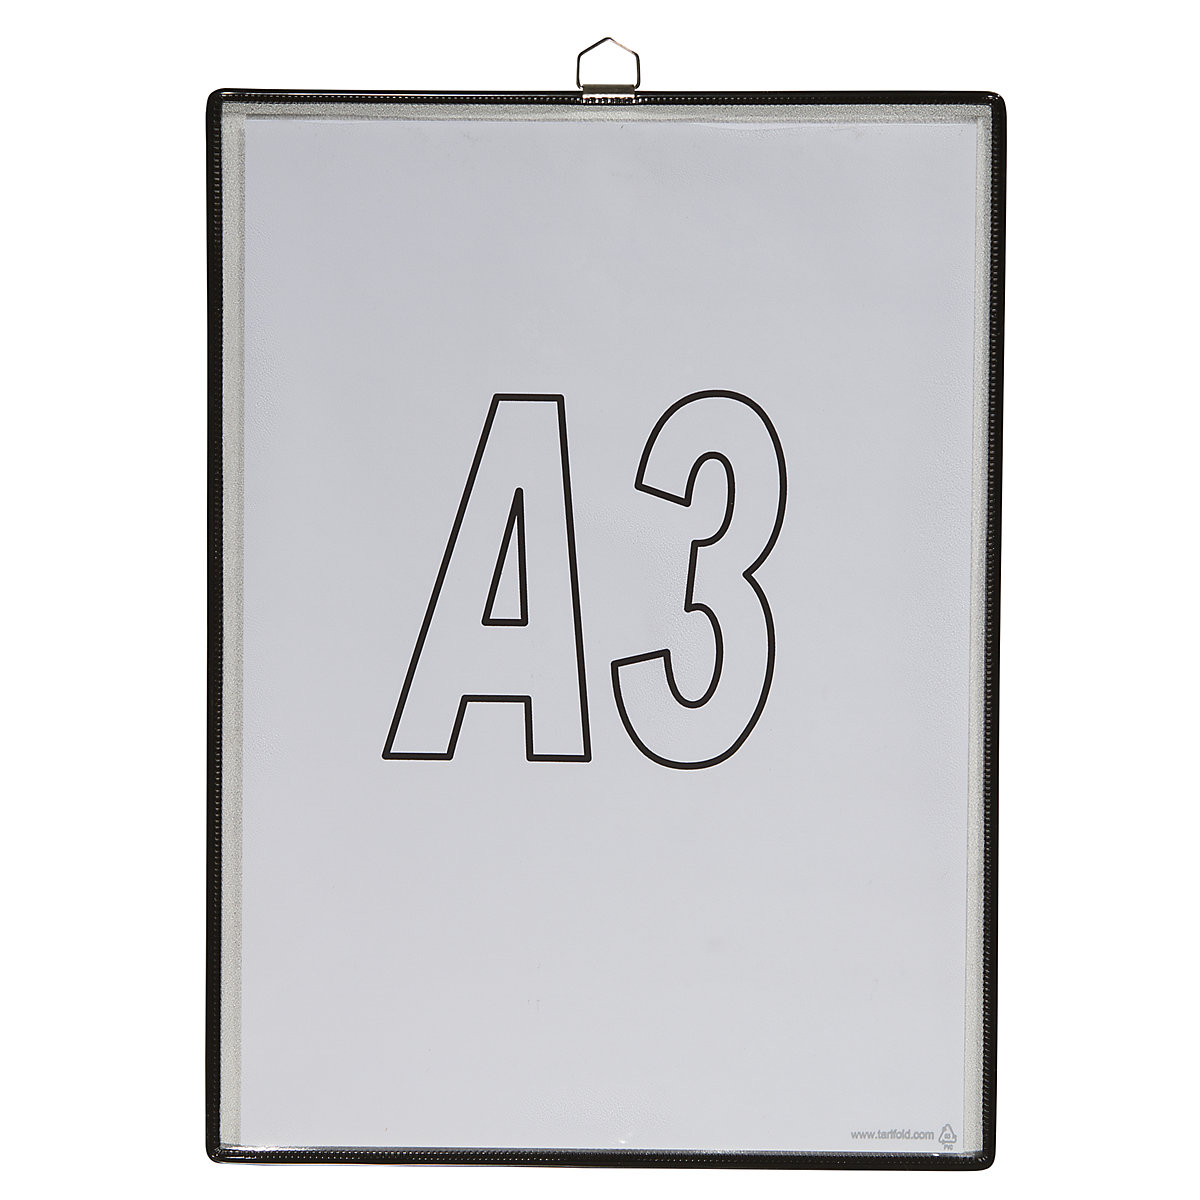 Pochette transparente à accrocher – Tarifold, pour format A3, coloris noir, lot de 10-4